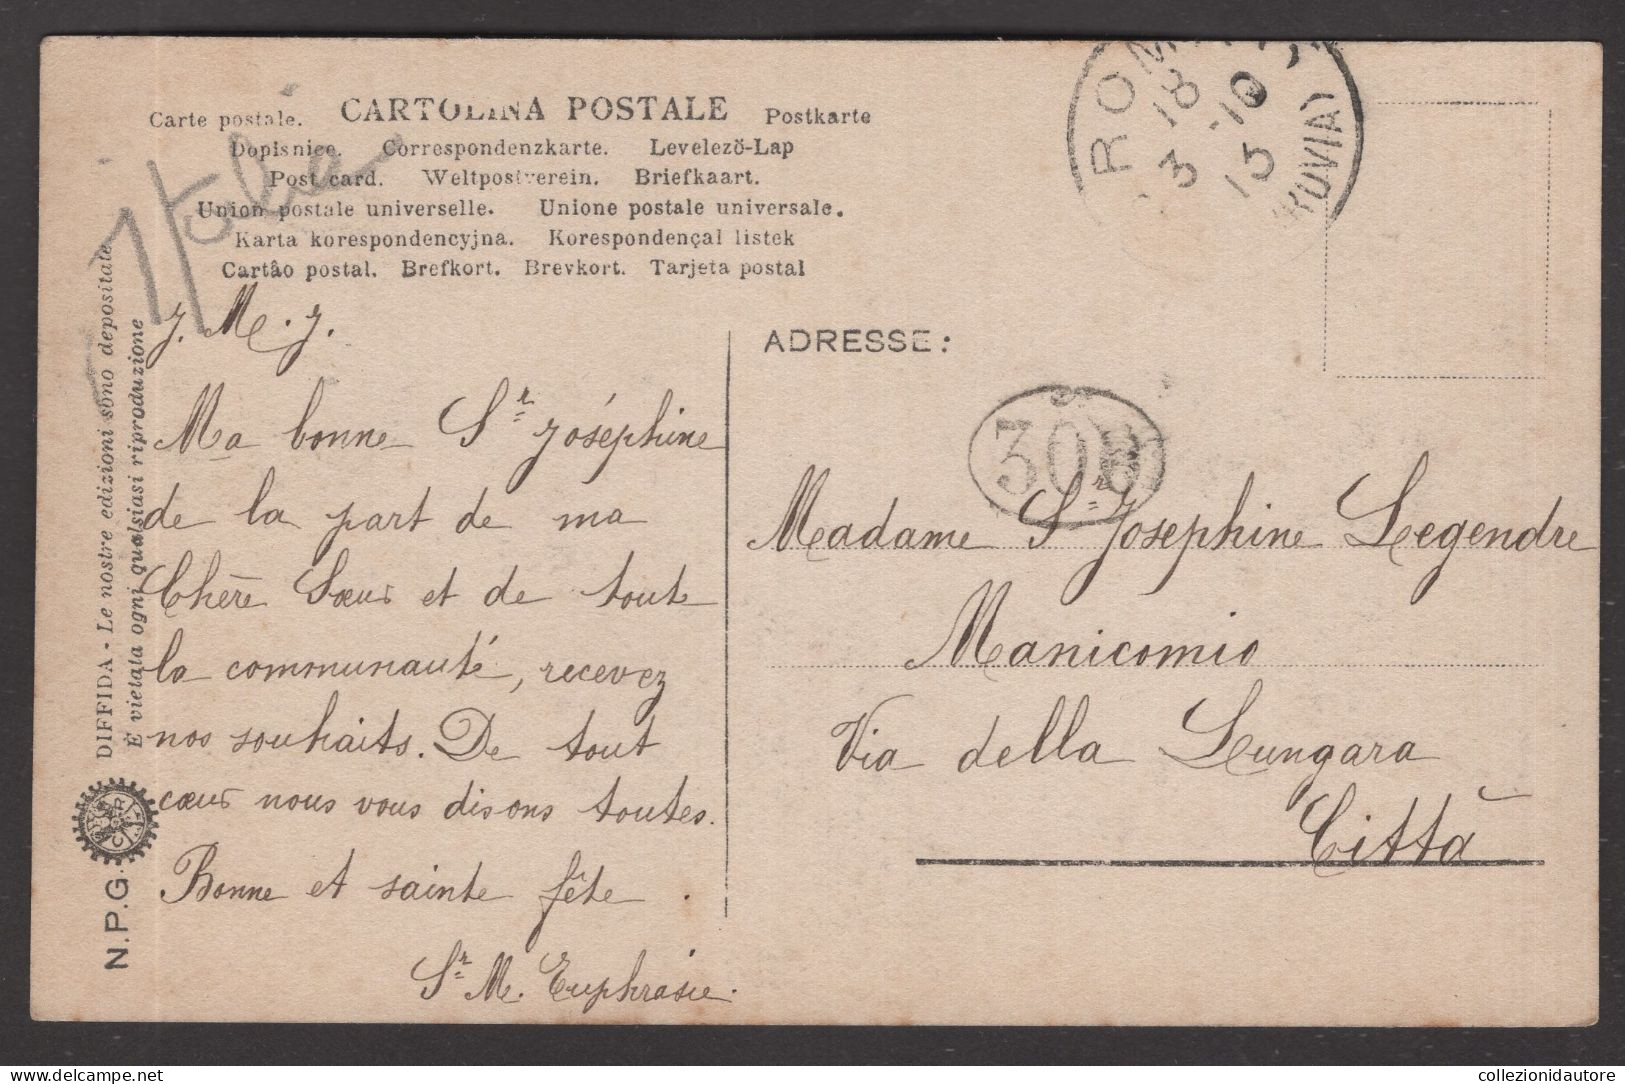 ROMA - ABBAZIA DELLE TRE FONTANE - PANORAMA - CARTOLINA FP SPEDITA NEL 1910 - Iglesias